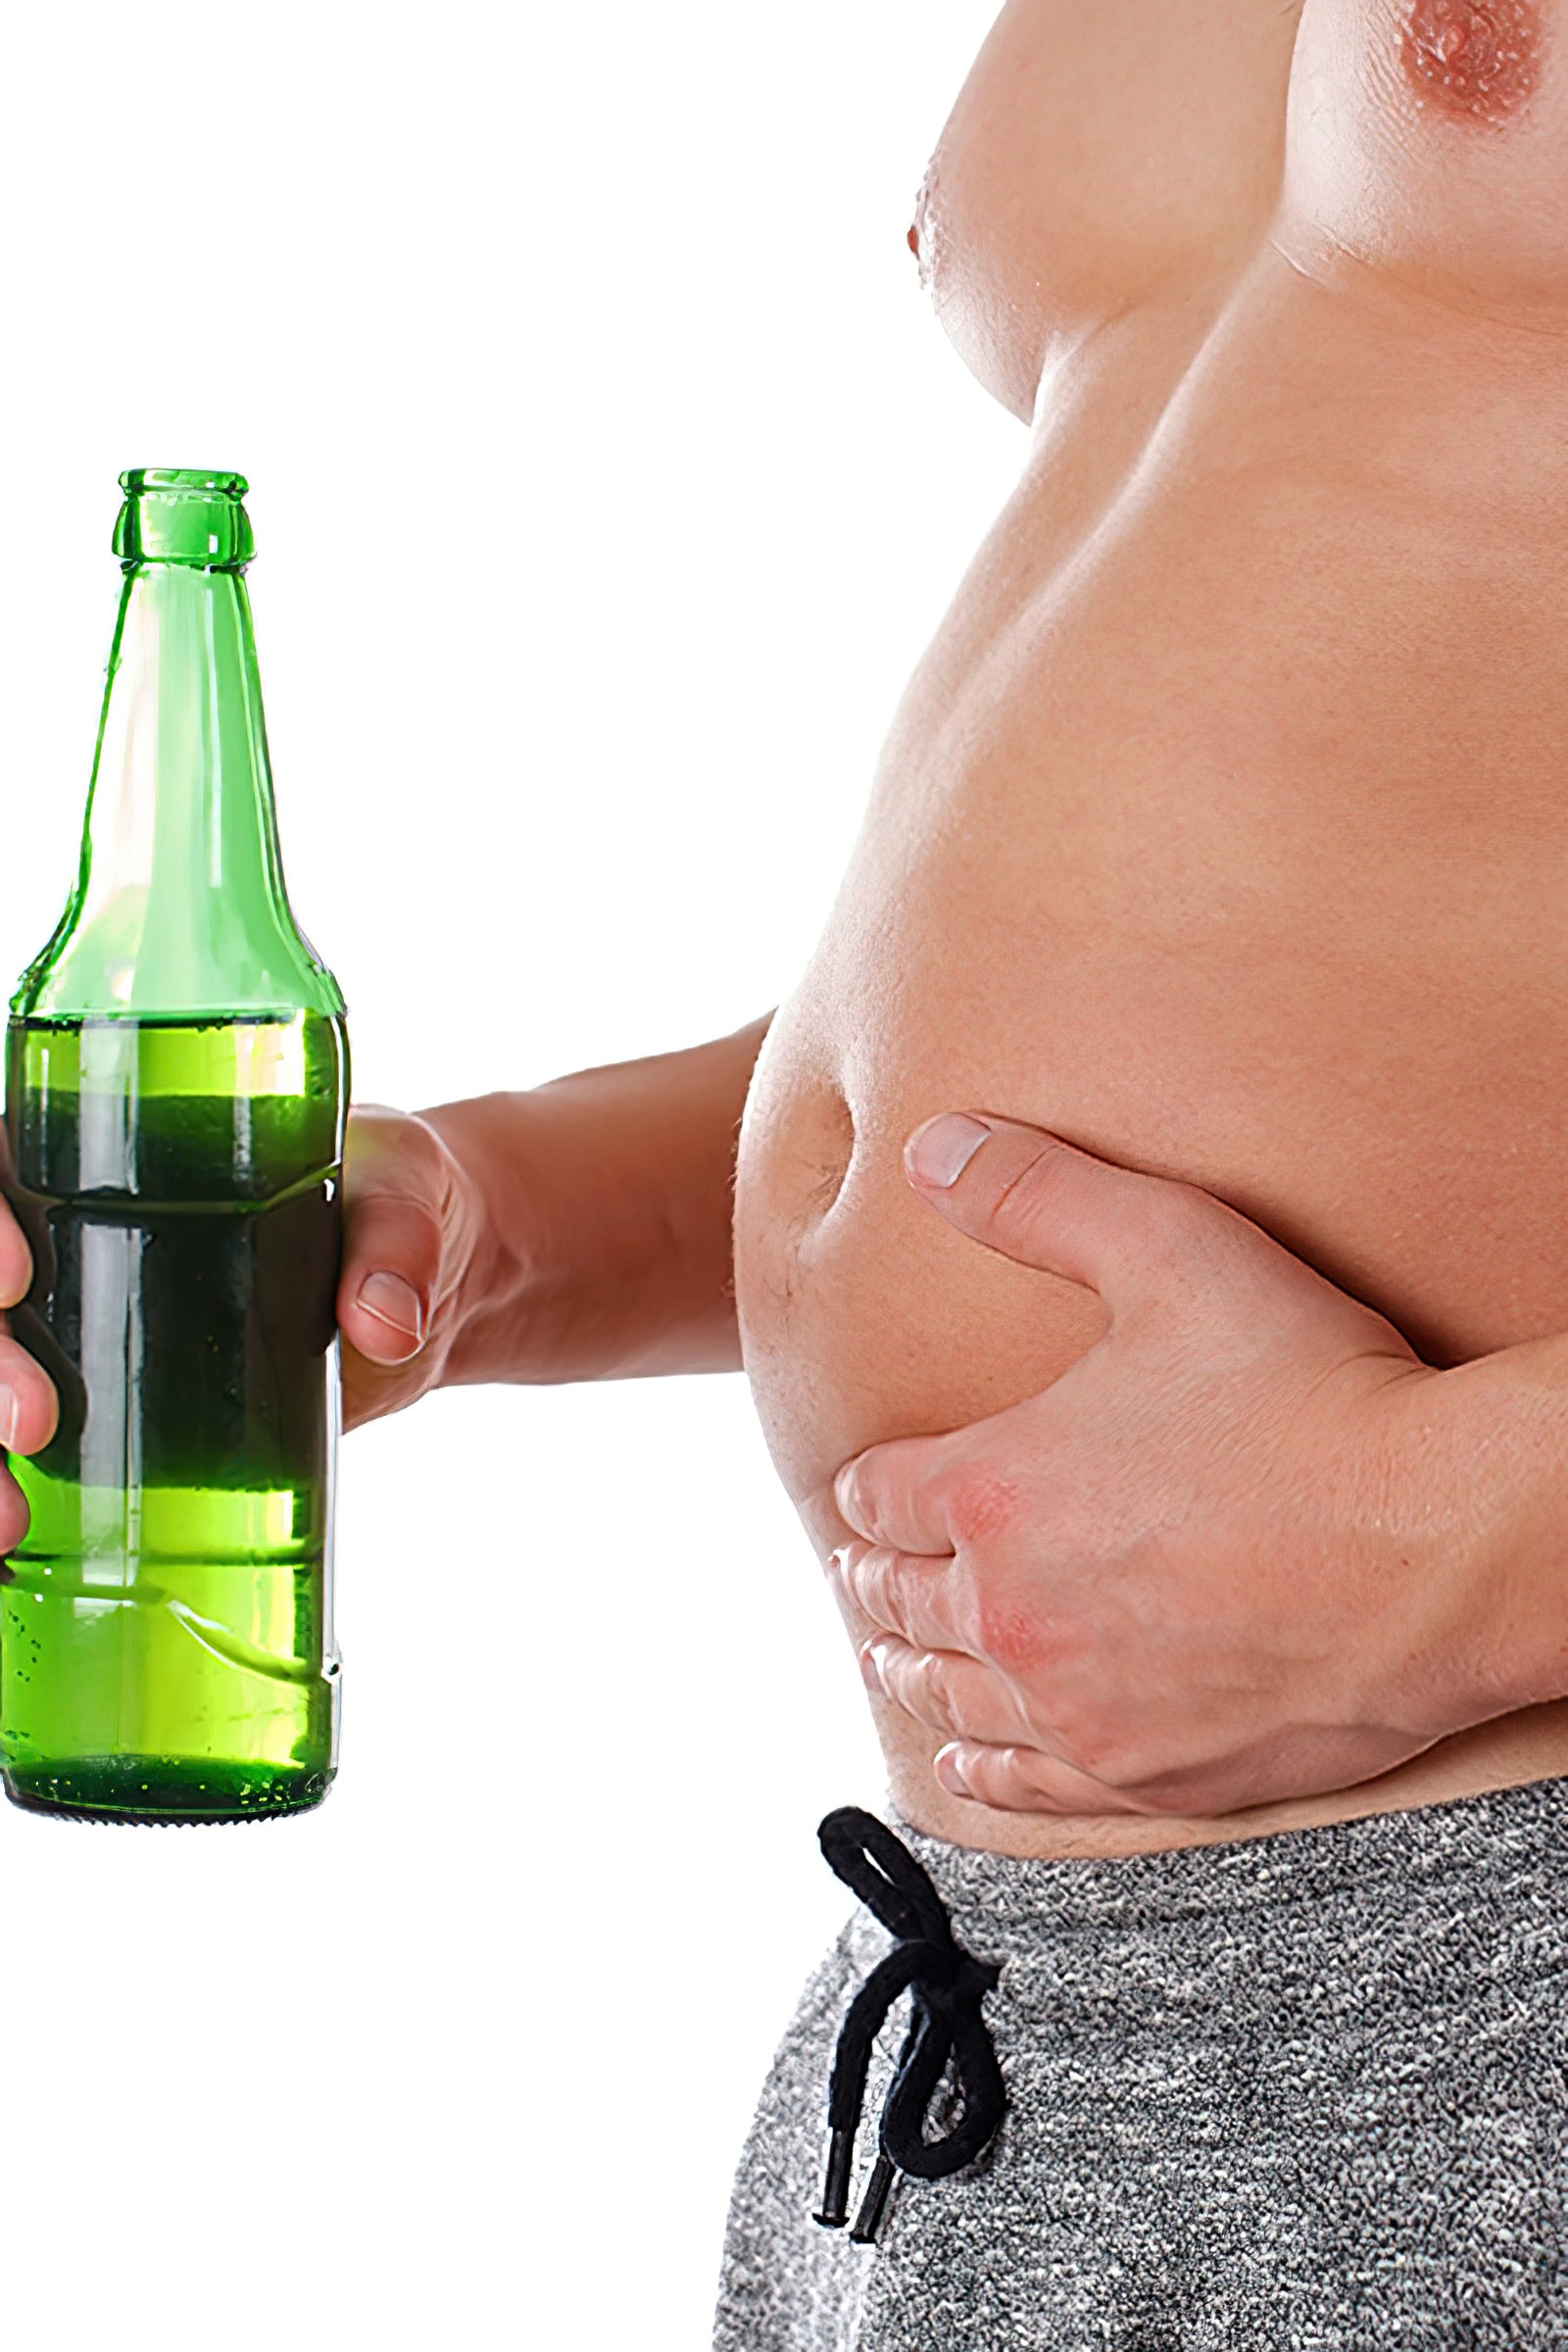 Die Wahrheit über Alkohol, Fettabbau und Muskelwachstum